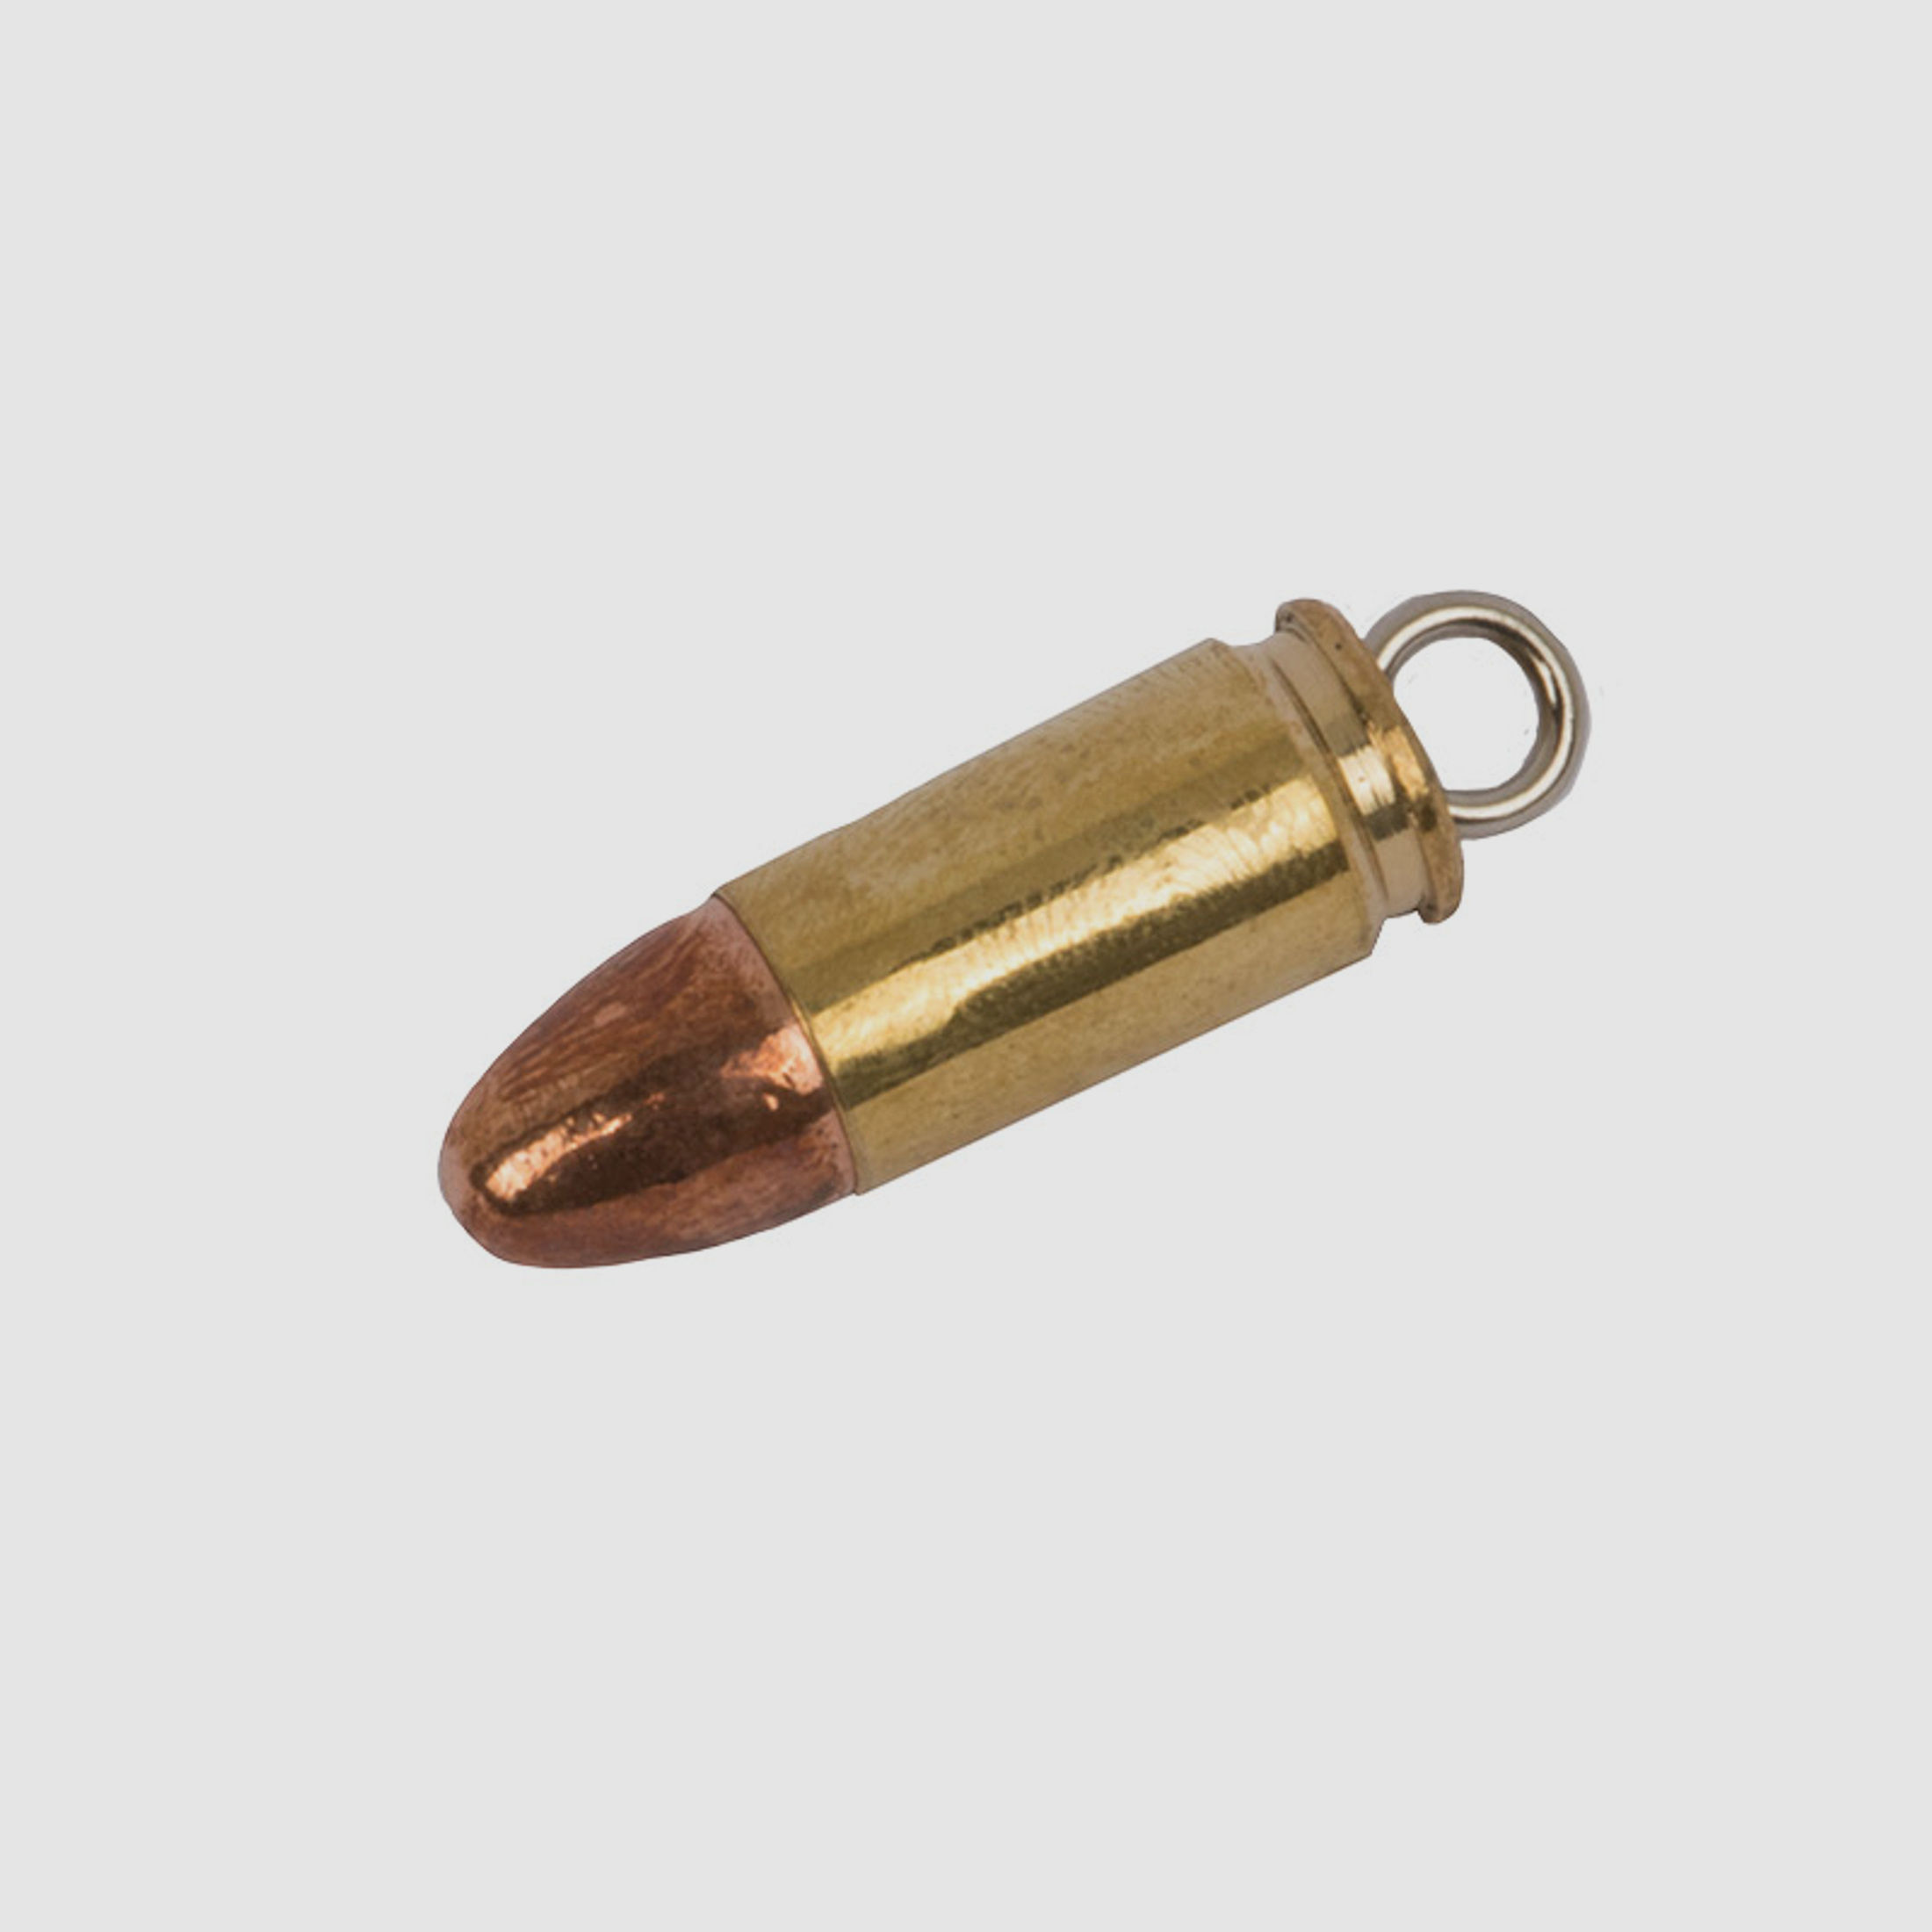 SchlĂĽsselanhĂ¤nger Kaliber 9 mm x 19 mm 9 mm Luger Hohlspitz handgefertigt